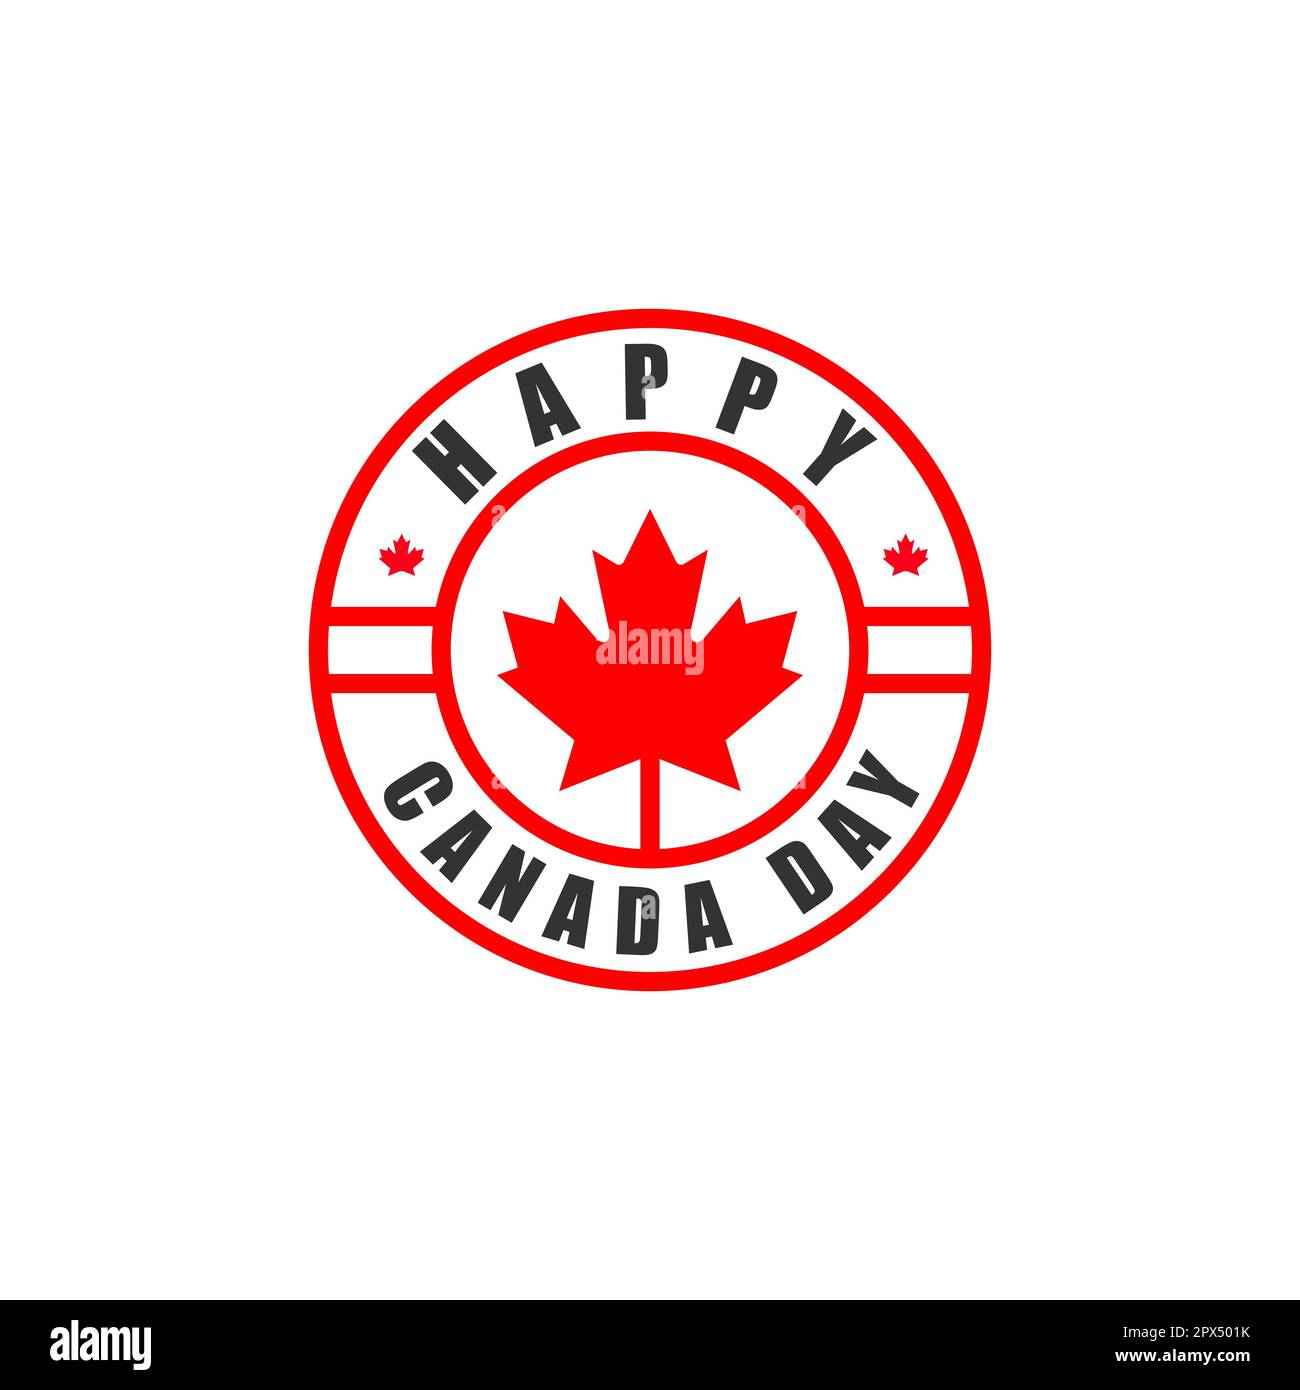 Logo vettoriale con scritte a mano isolate per il Canada Day con realistiche foglie di acero rosso.EPS 10 Illustrazione Vettoriale